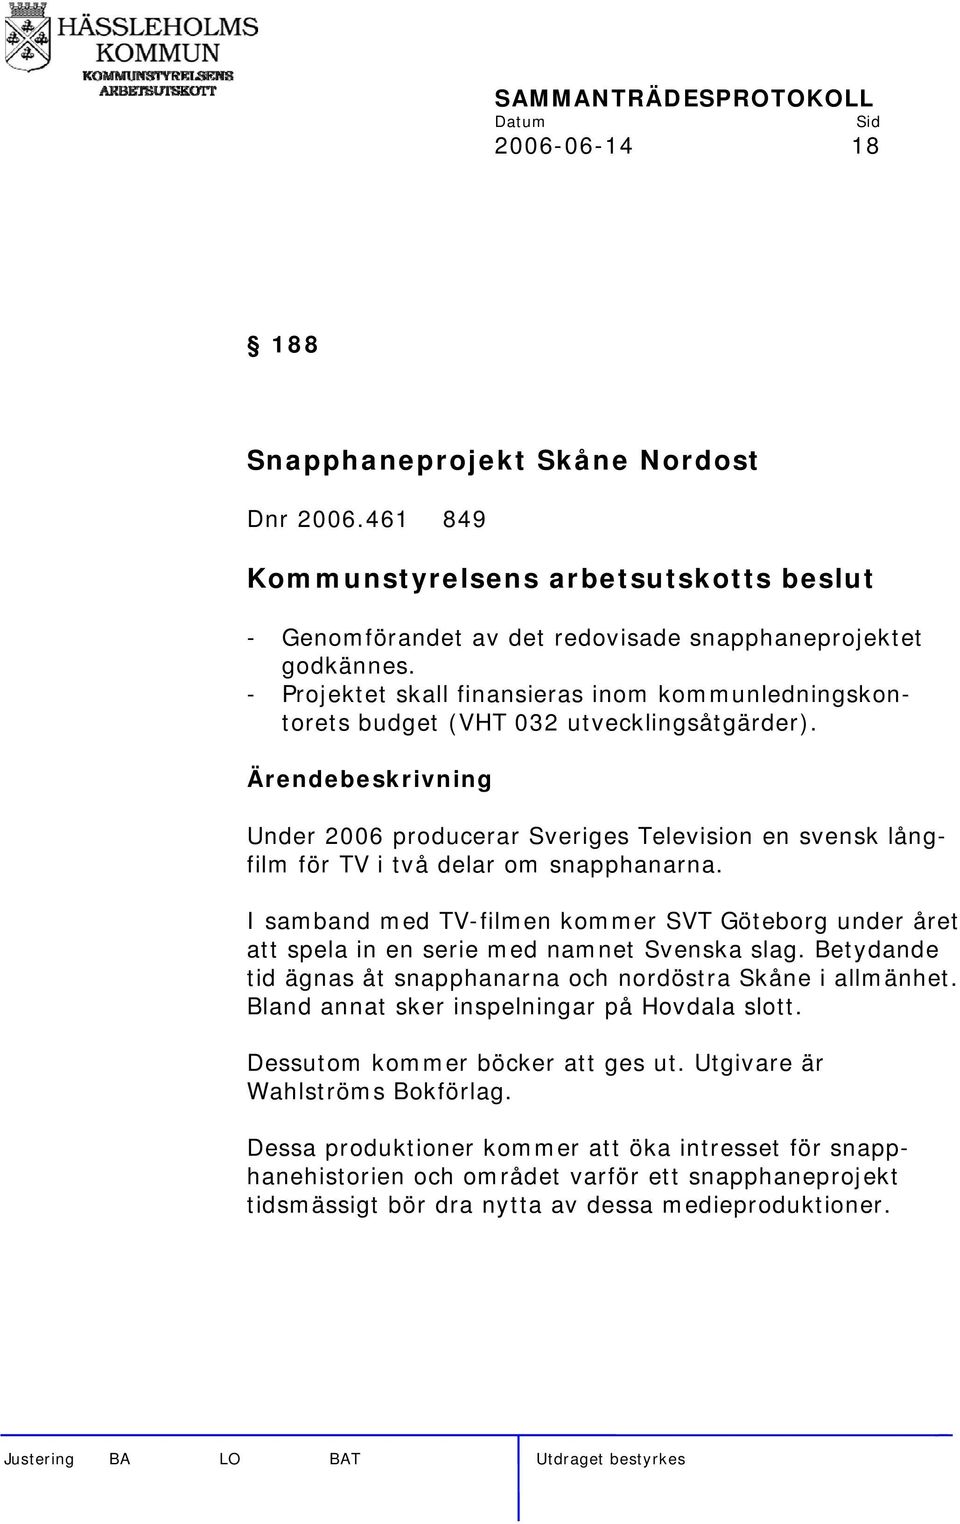 I samband med TV-filmen kommer SVT Göteborg under året att spela in en serie med namnet Svenska slag. Betydande tid ägnas åt snapphanarna och nordöstra Skåne i allmänhet.